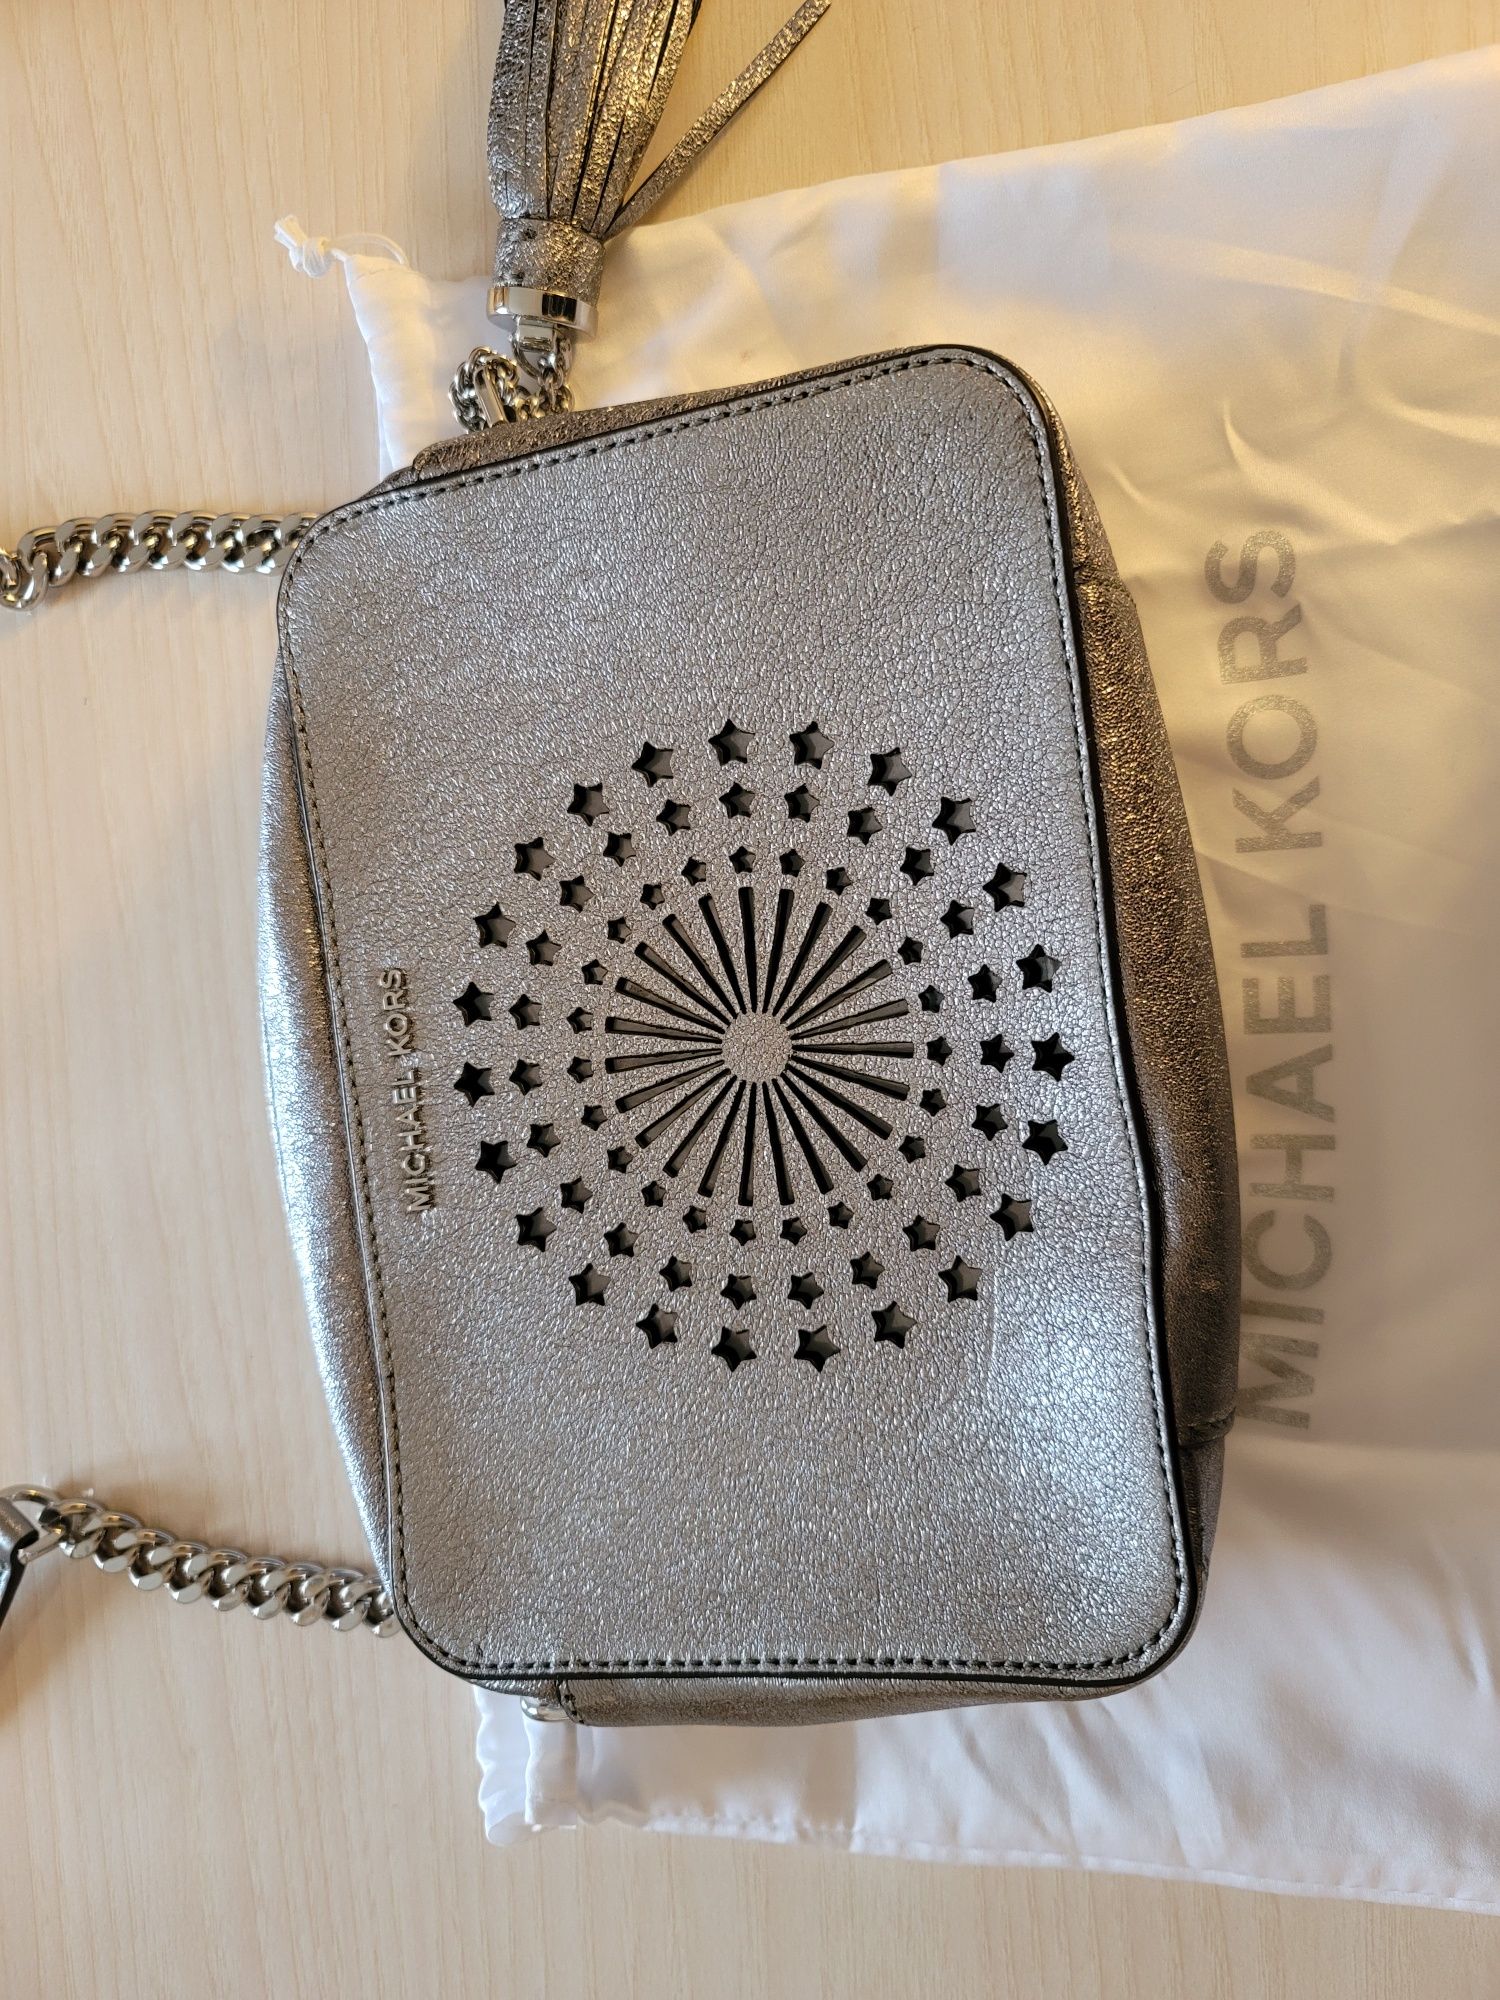 Michael Kors  сумка  нова, шкіряна, срібного кольору.